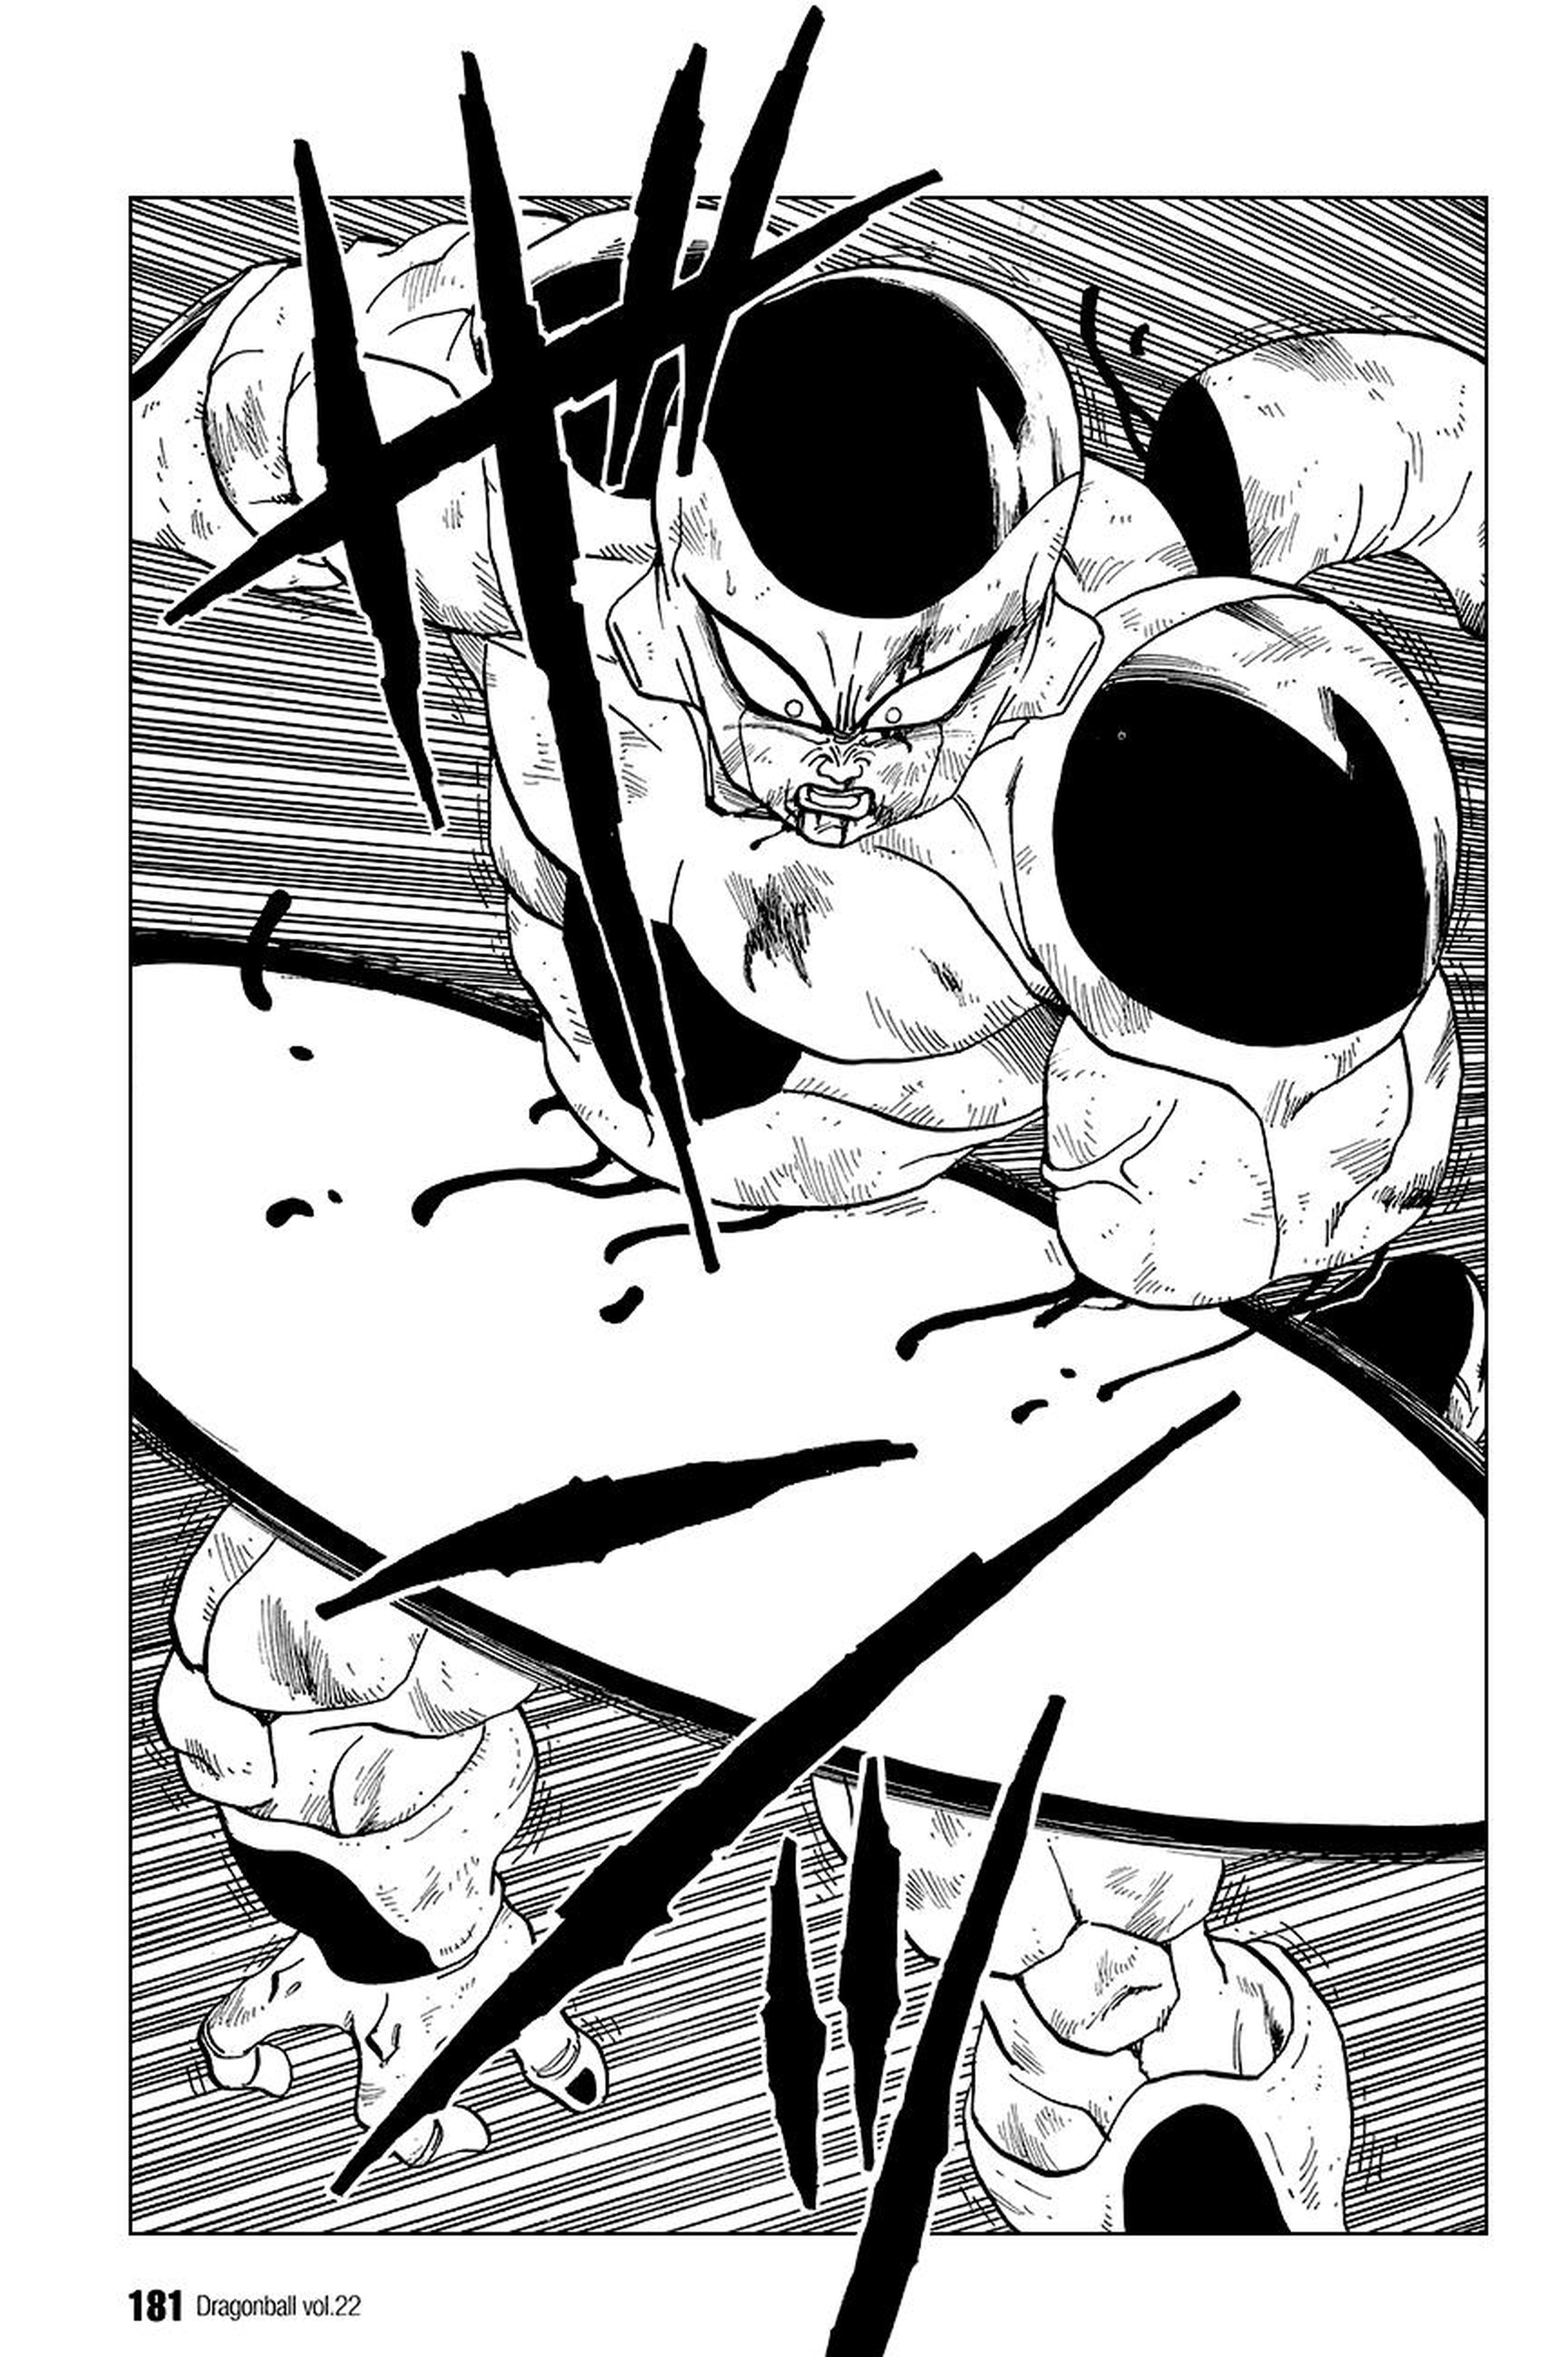 El sadismo en el manga de Dragon Ball